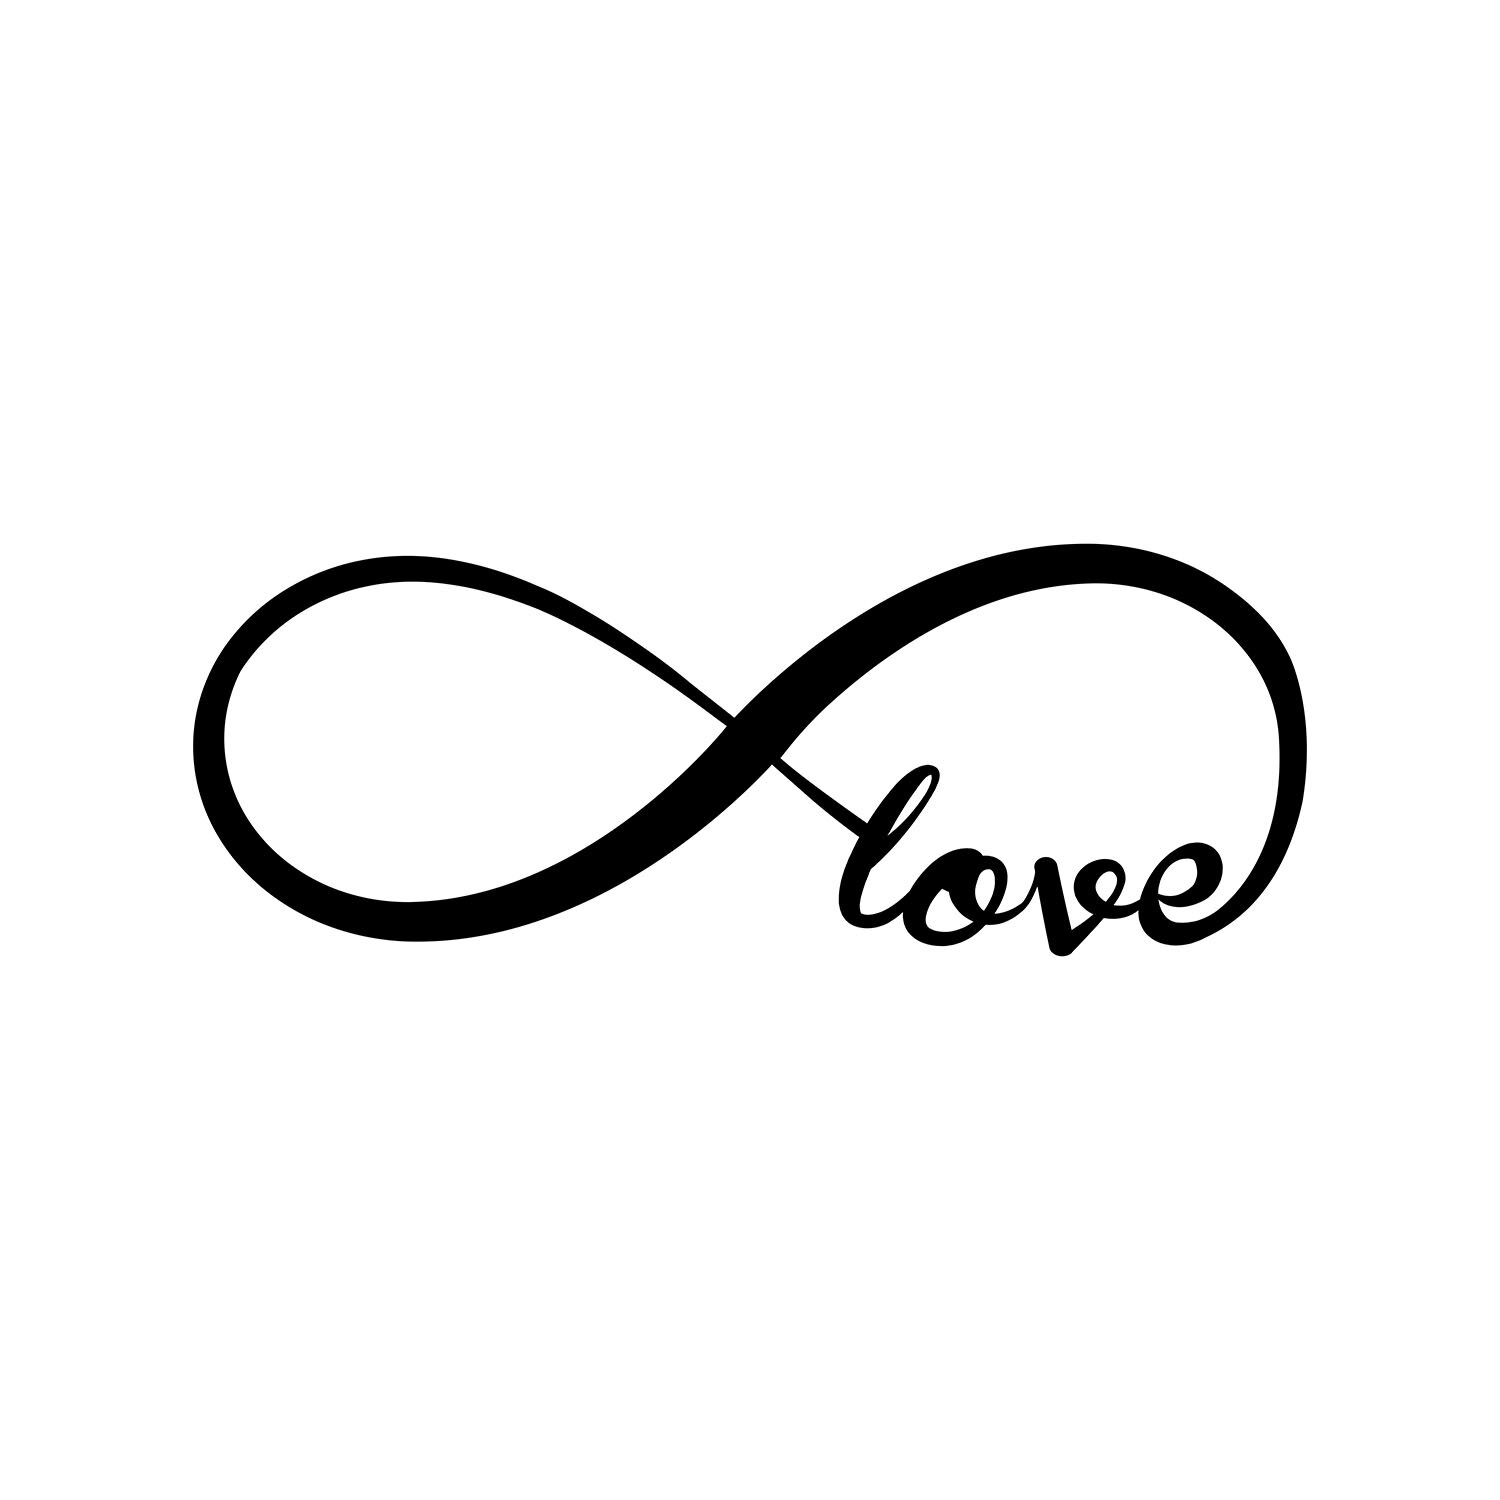 symbols for love forever